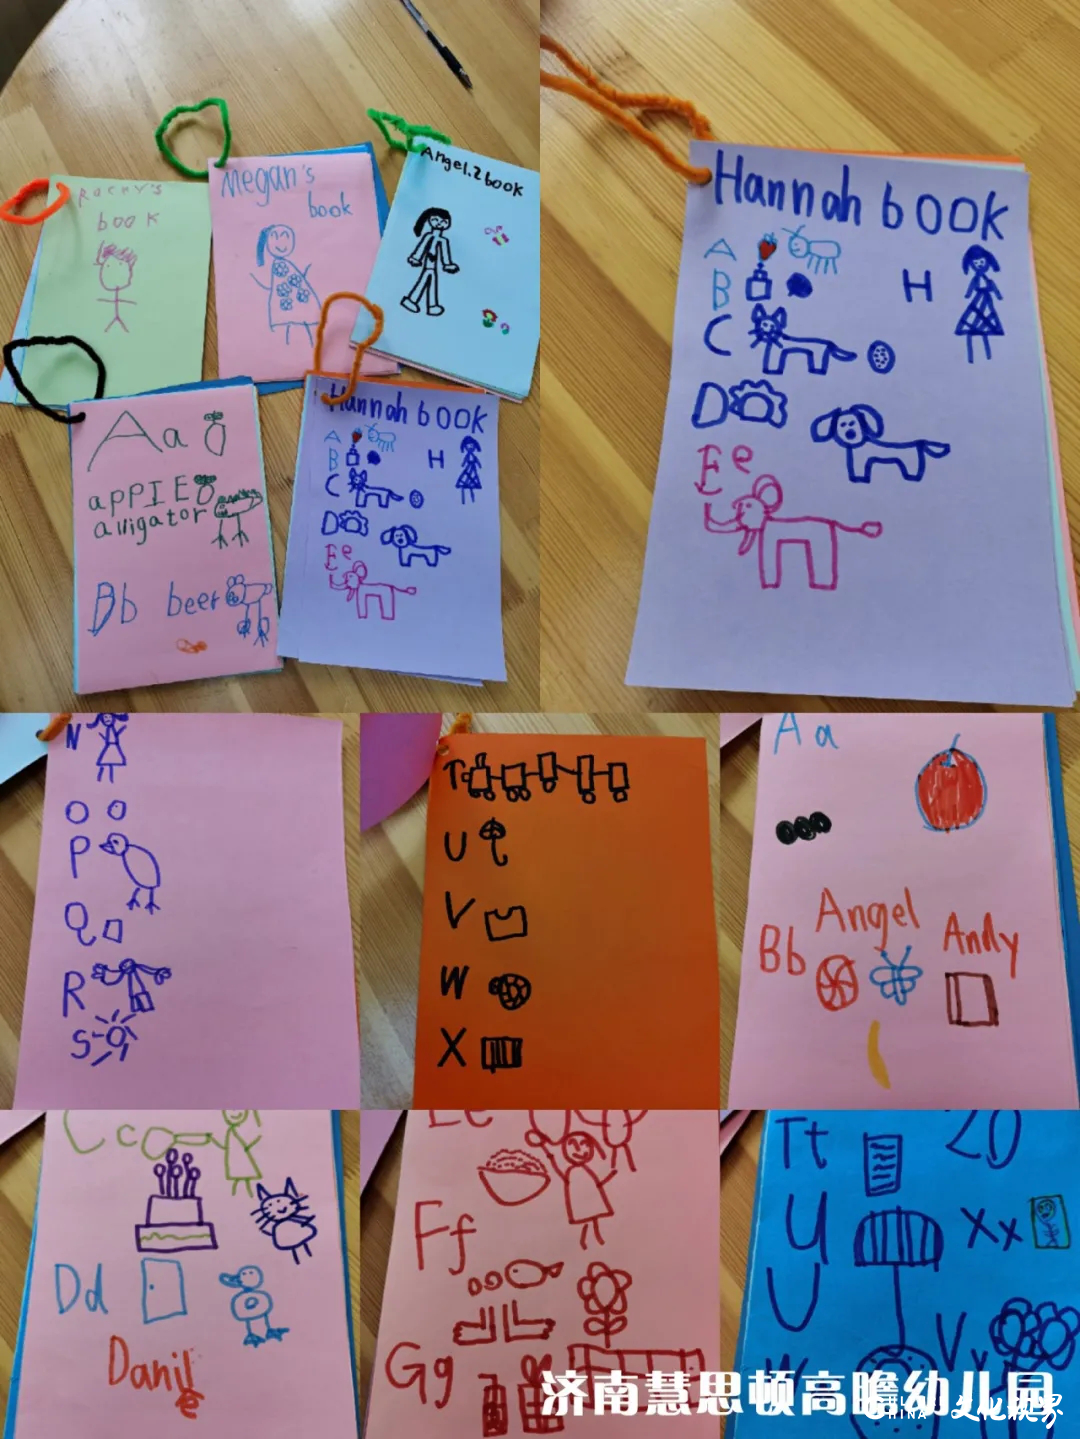 幸福的孩子爱画画，高瞻的孩子很幸福——在济南市慧思顿高瞻幼儿园，看孩子们如何无拘无束地涂鸦创作